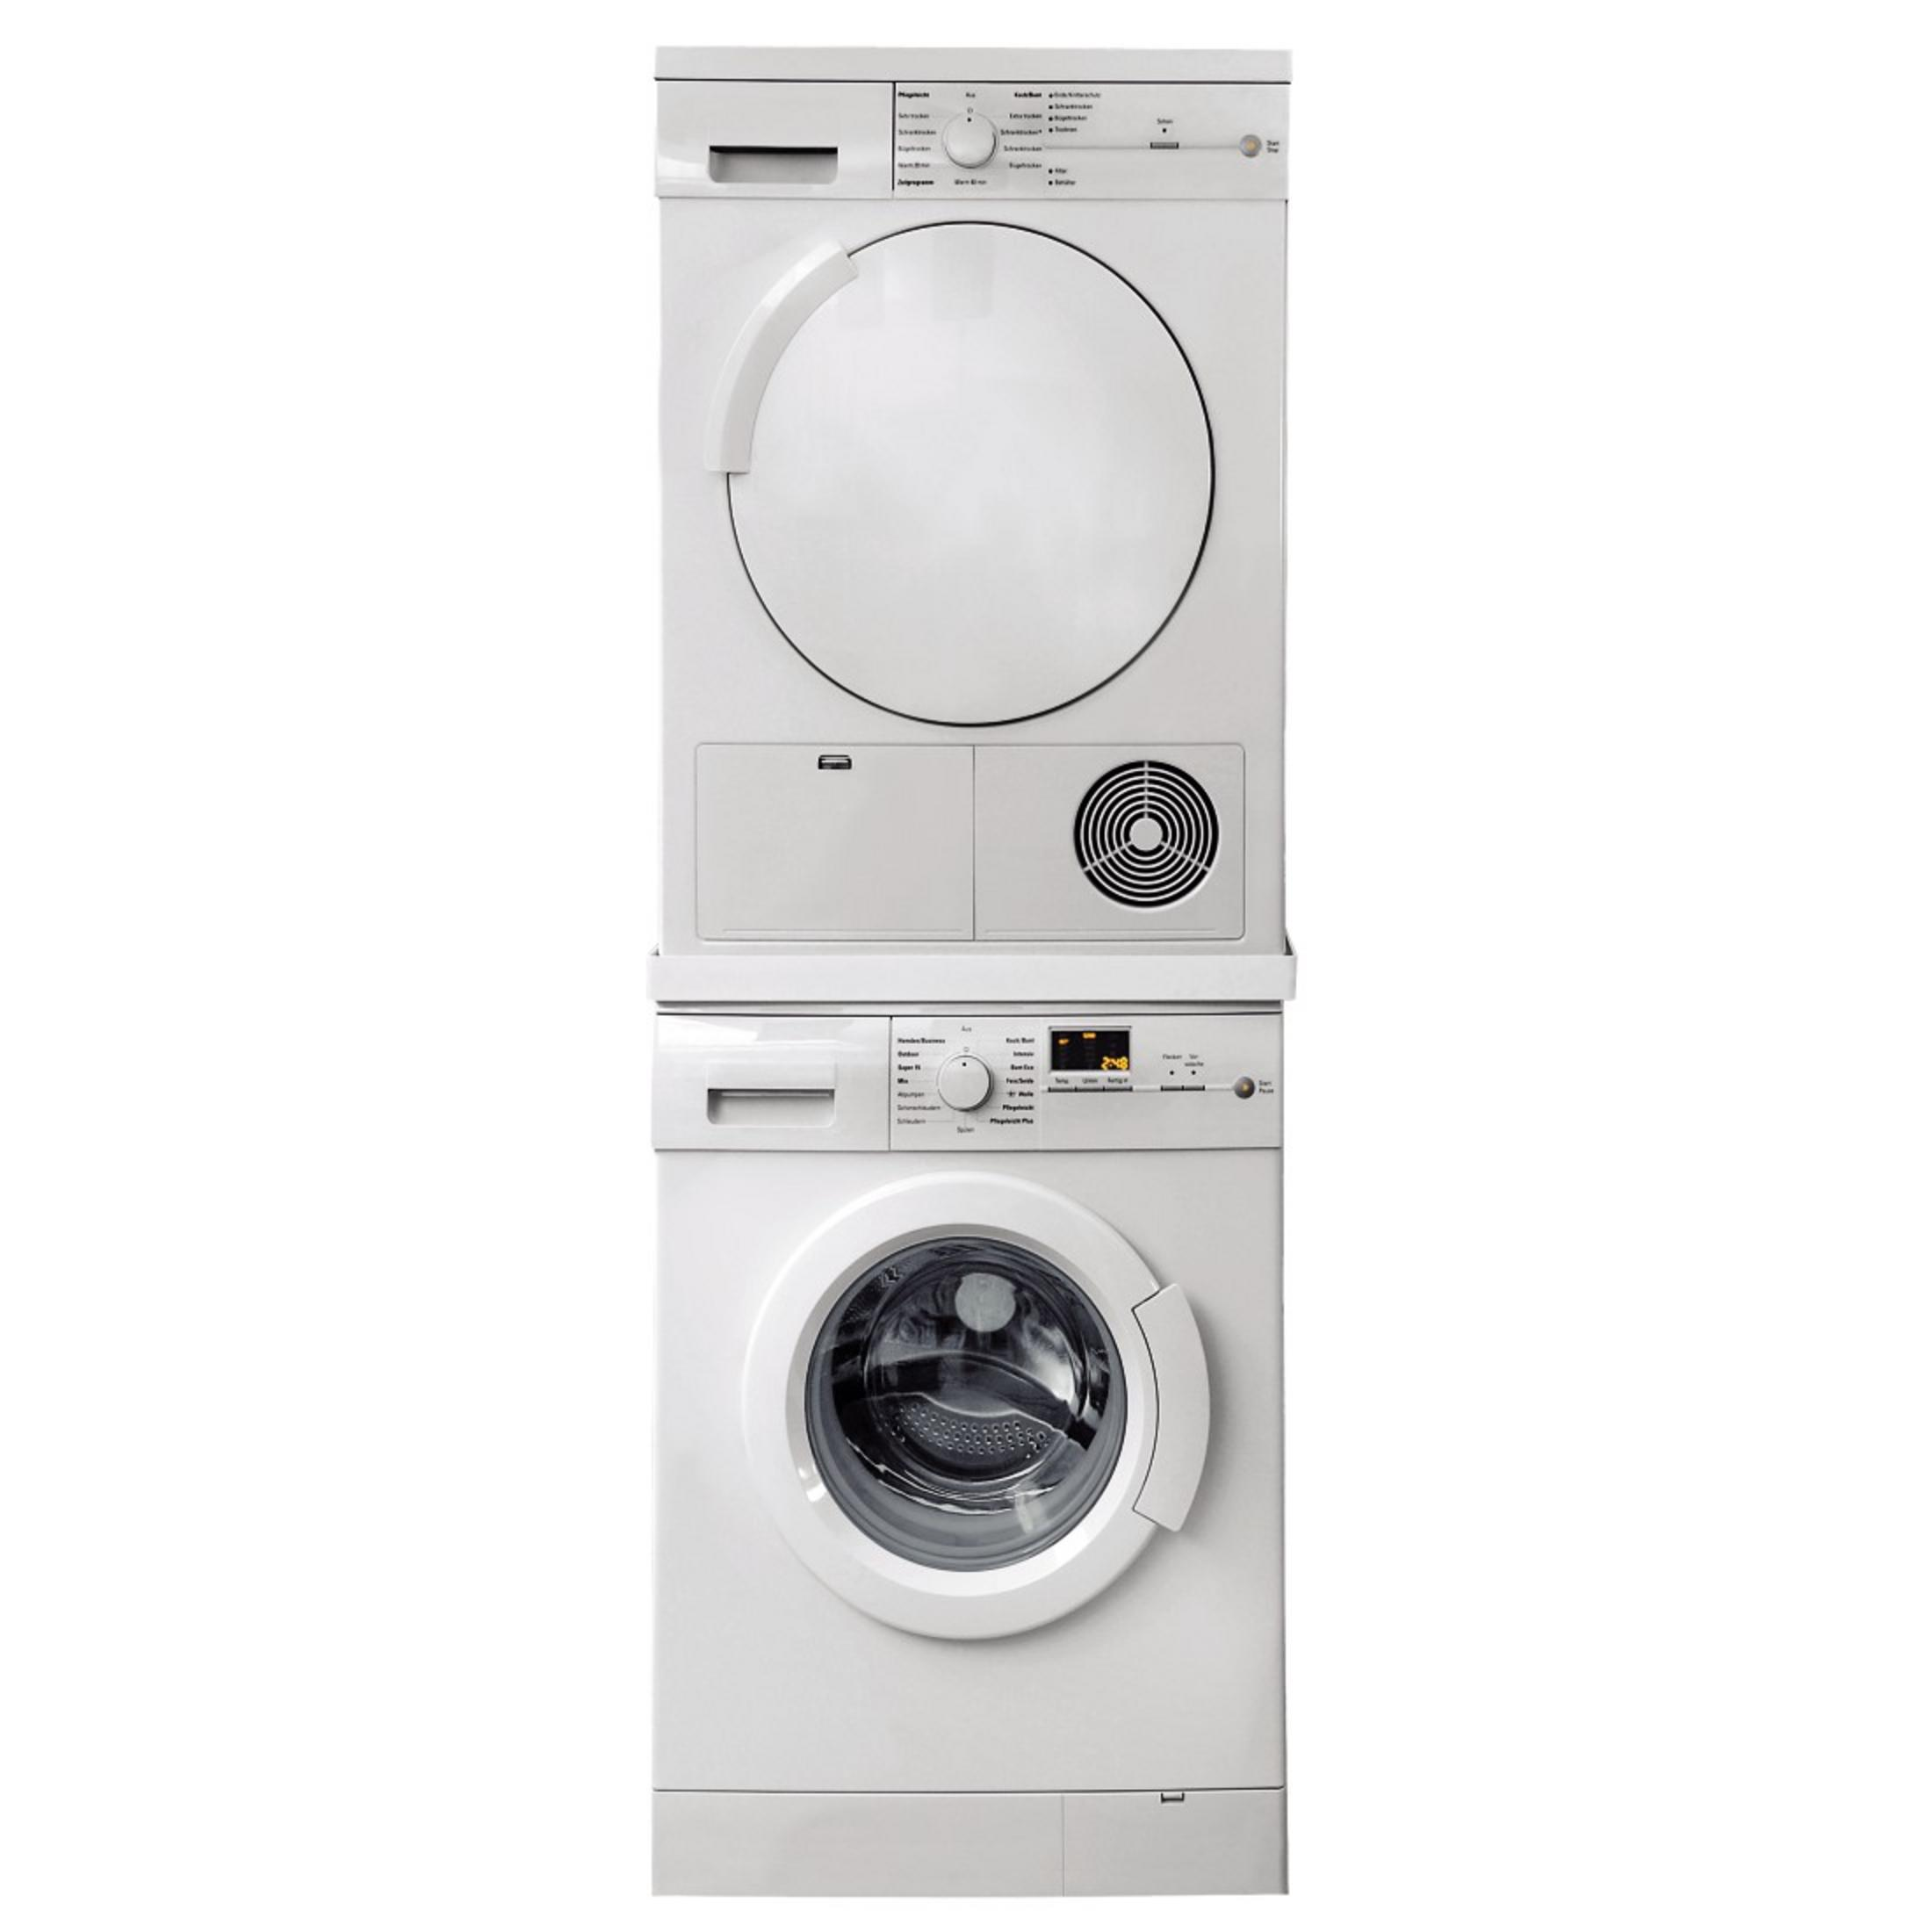 XAVAX 110815 Zwischenbausatz :1/SCH (600 ZWISCHENBAUSATZ Waschmaschine/Trockner für mm)